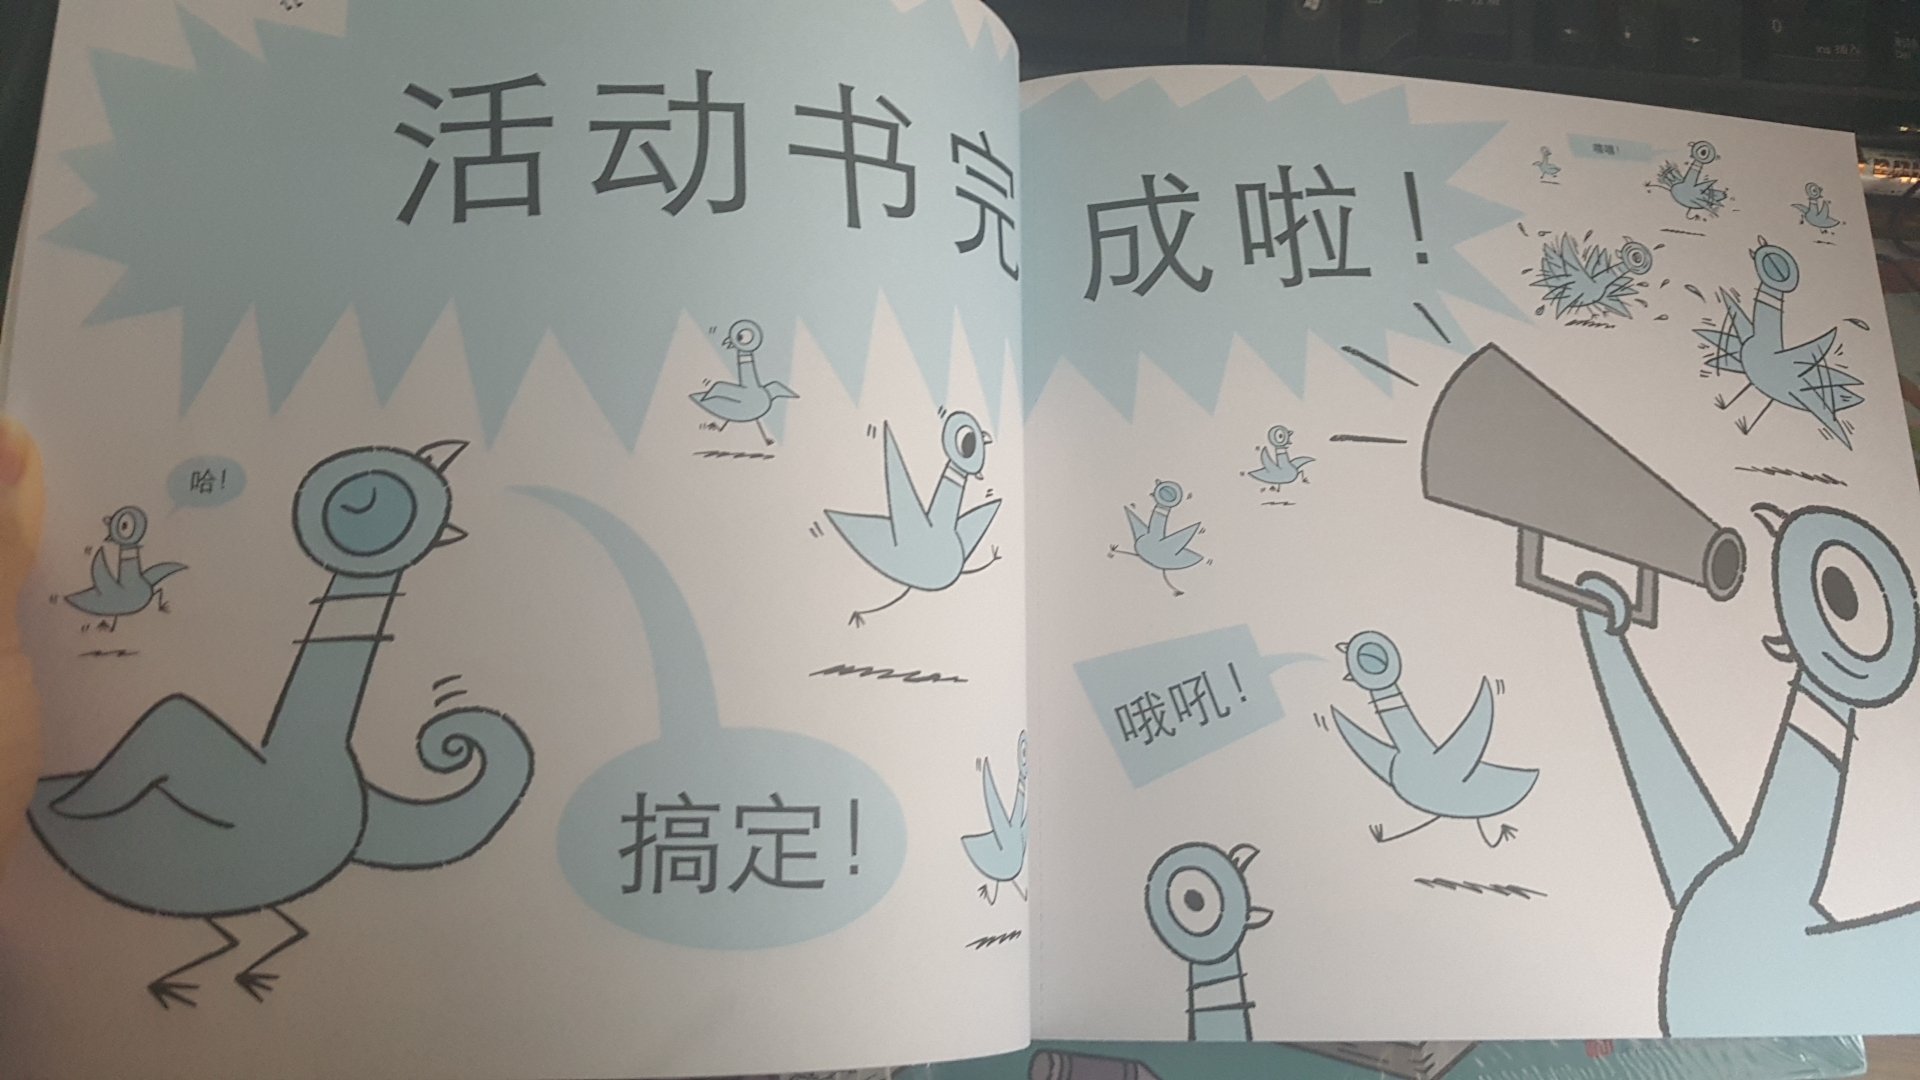 这一套是游戏书，等孩子大点了玩，可以涂涂画画，看过鸽子系列的小朋友应该会很喜欢